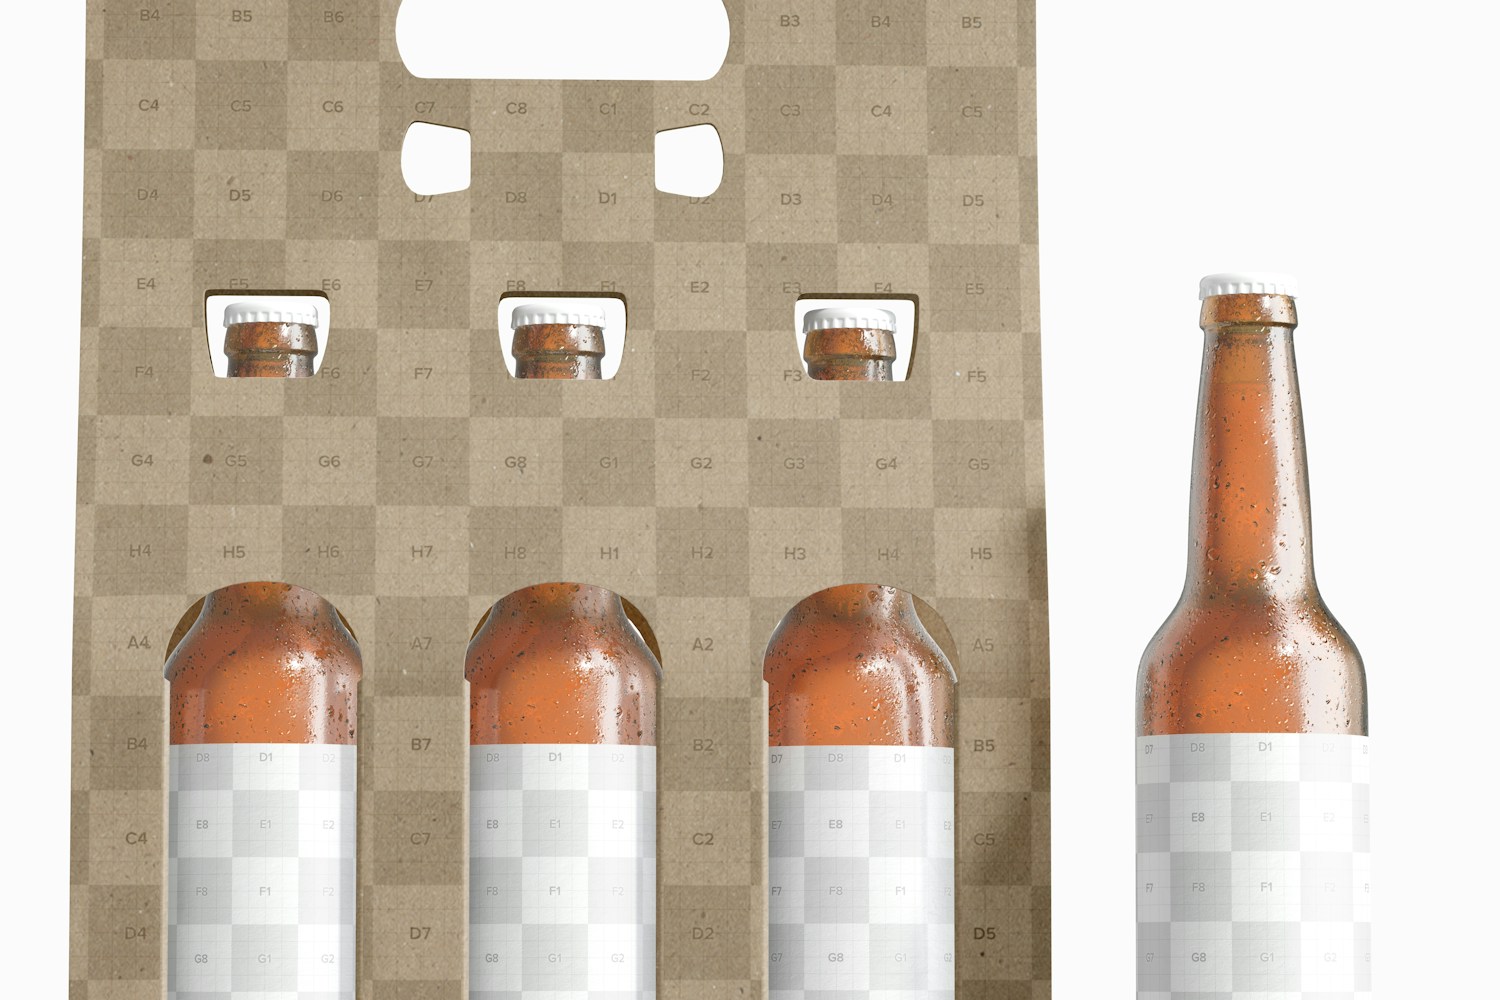 Kraft Paper 3 Beer Bottle Carrier Mockup, Close-up